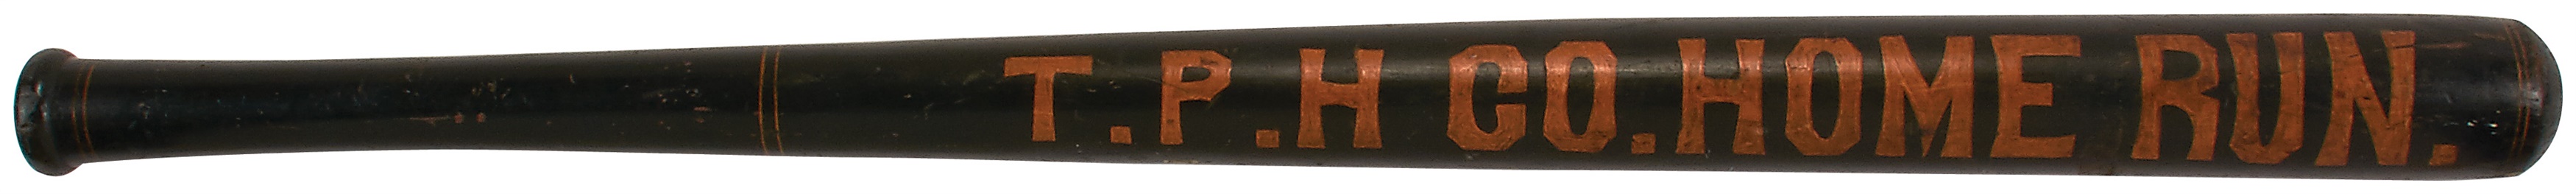 1880s "Home Run" Baseball Bat Trade Sign